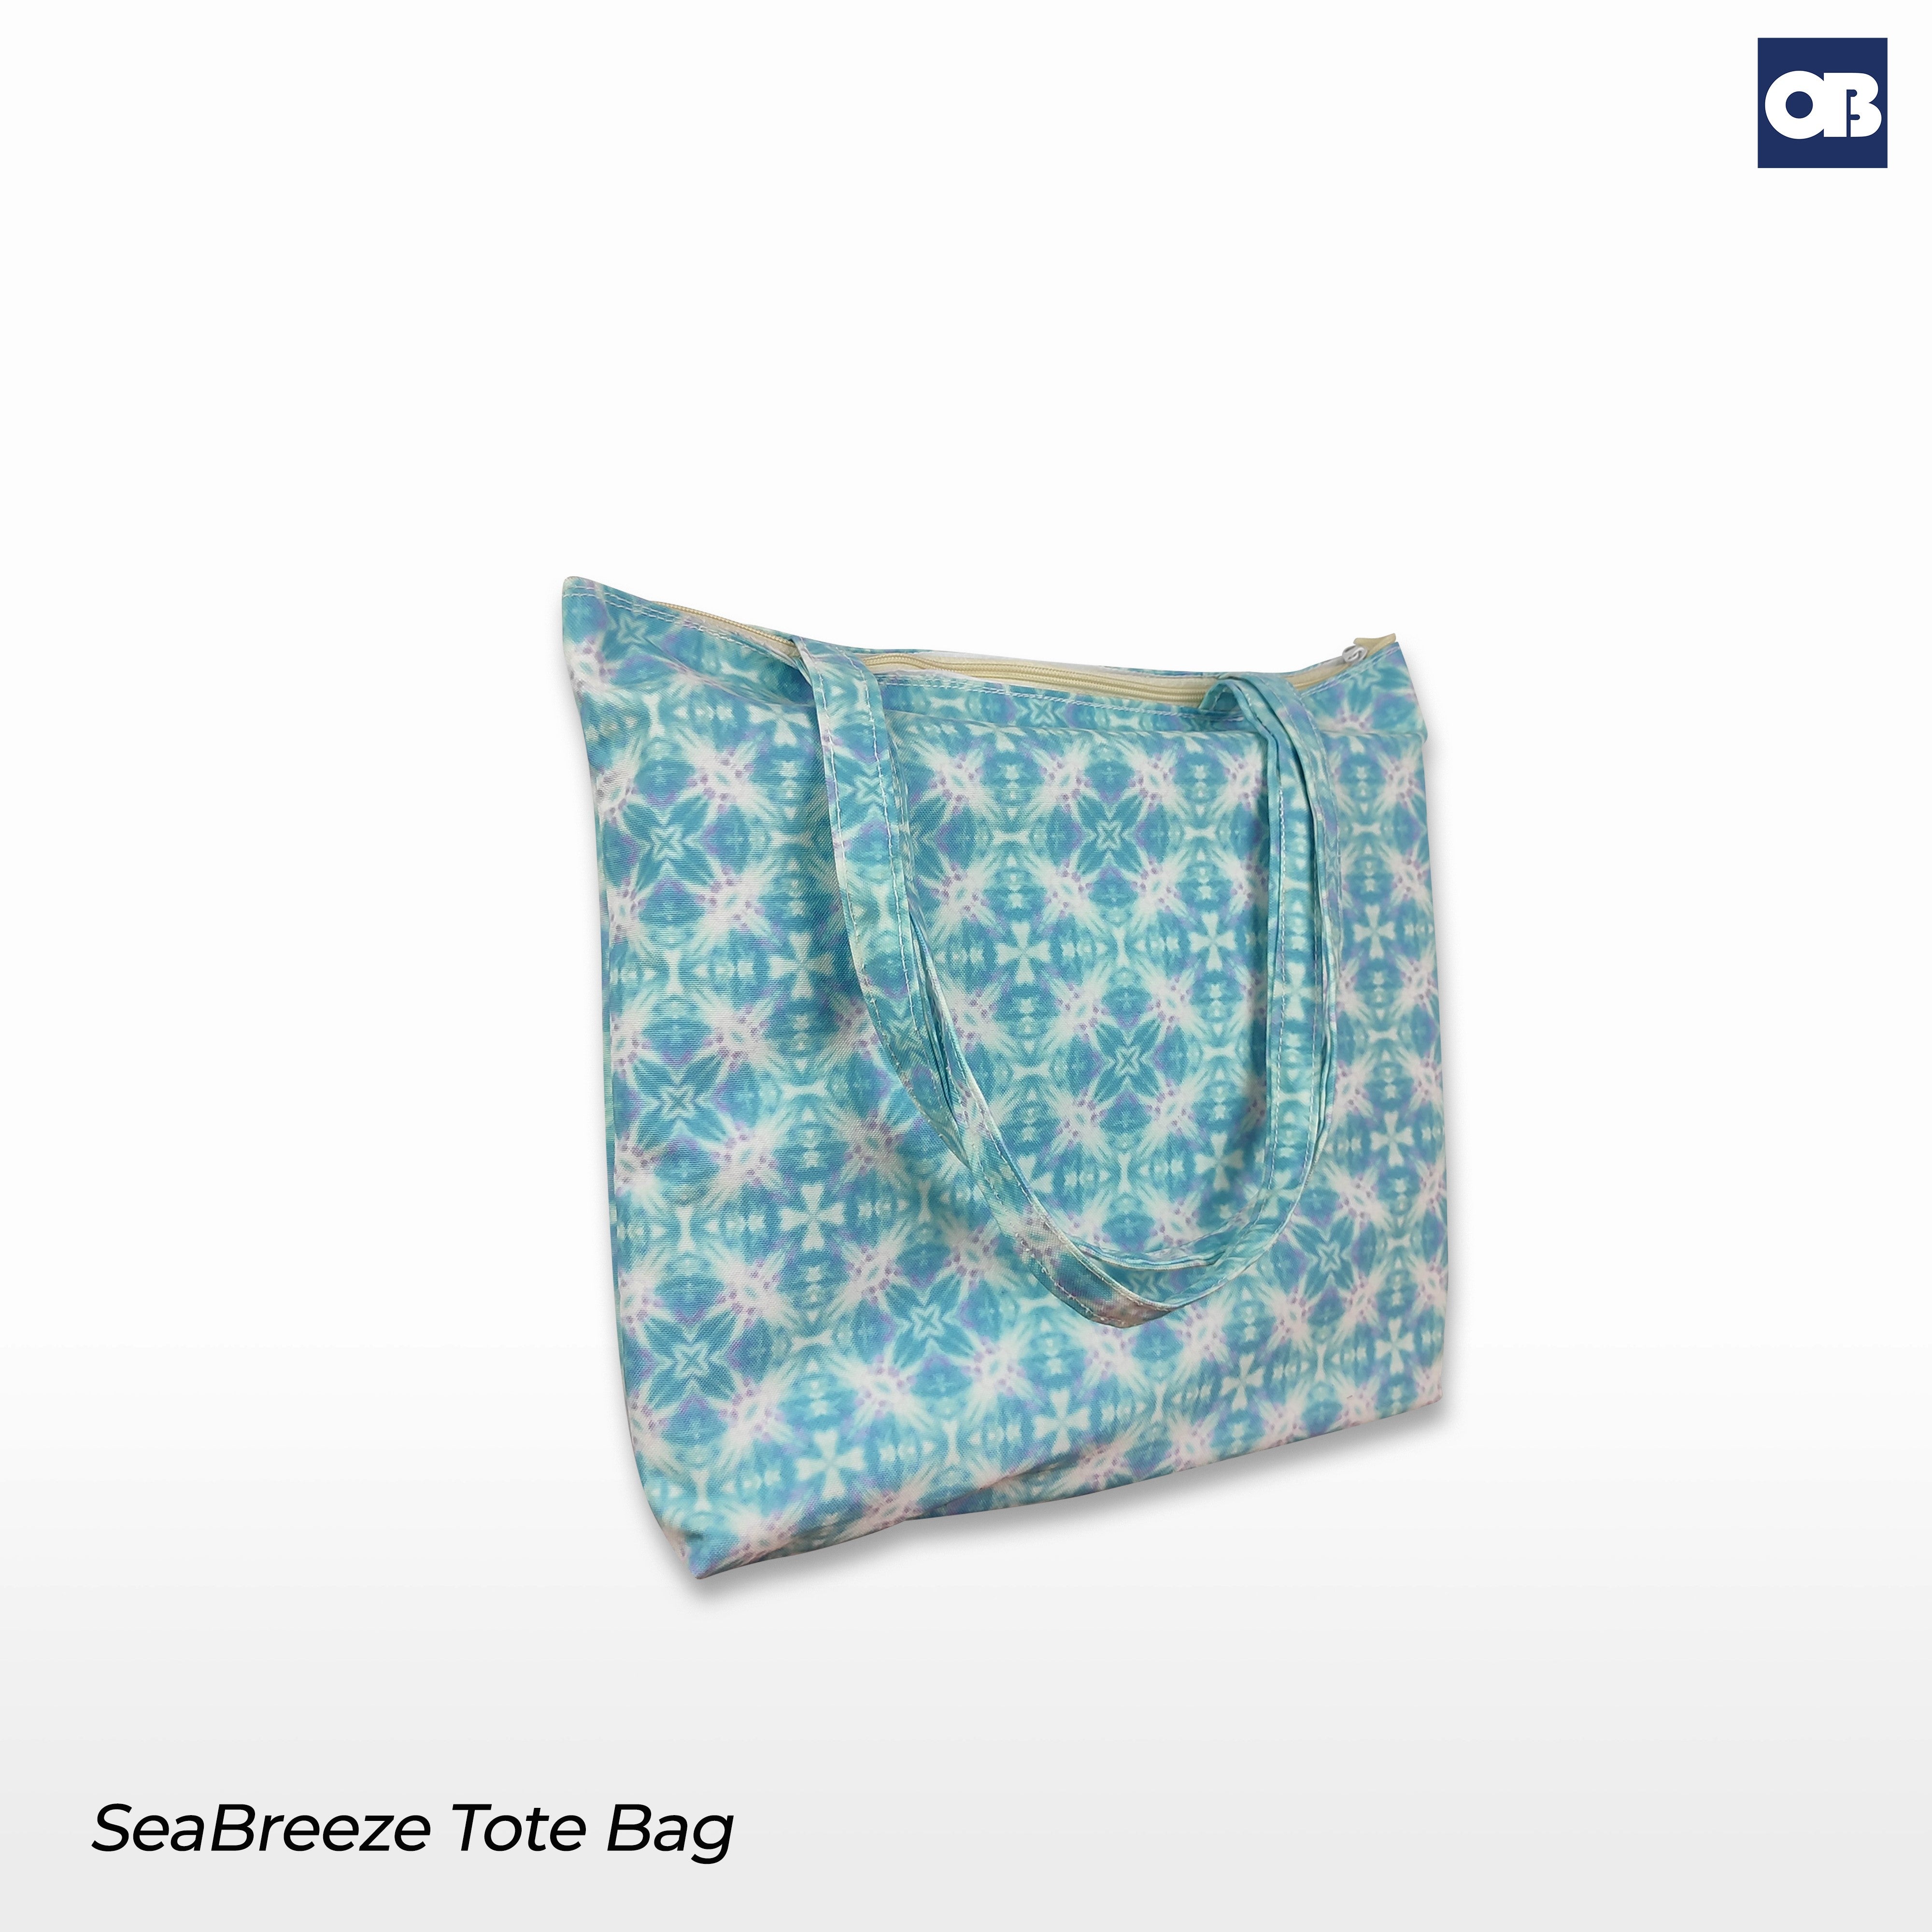 OB Seabreeze Tote Bag